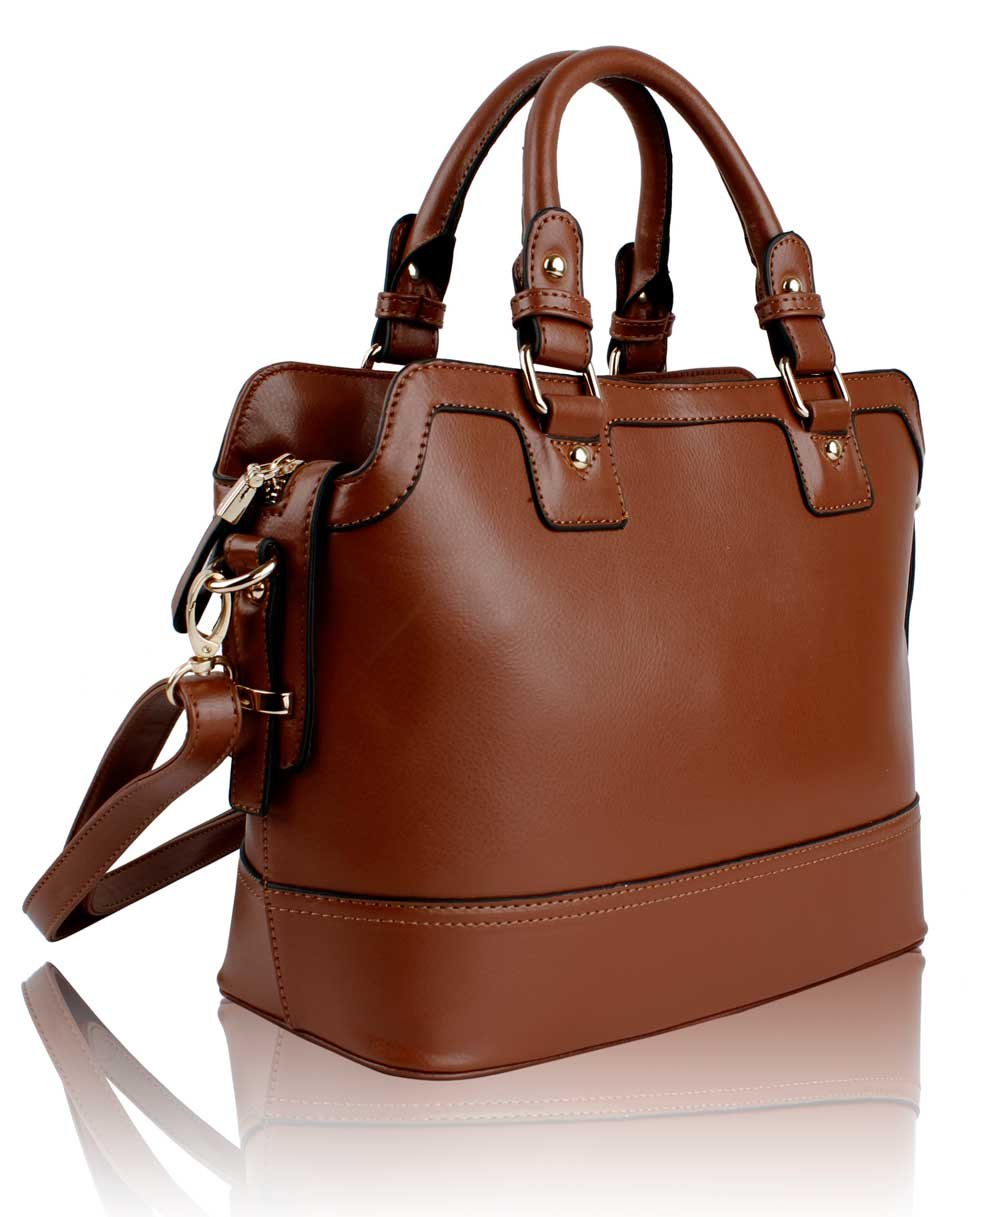 Wholesale Coffee Fashion Tote Handbag